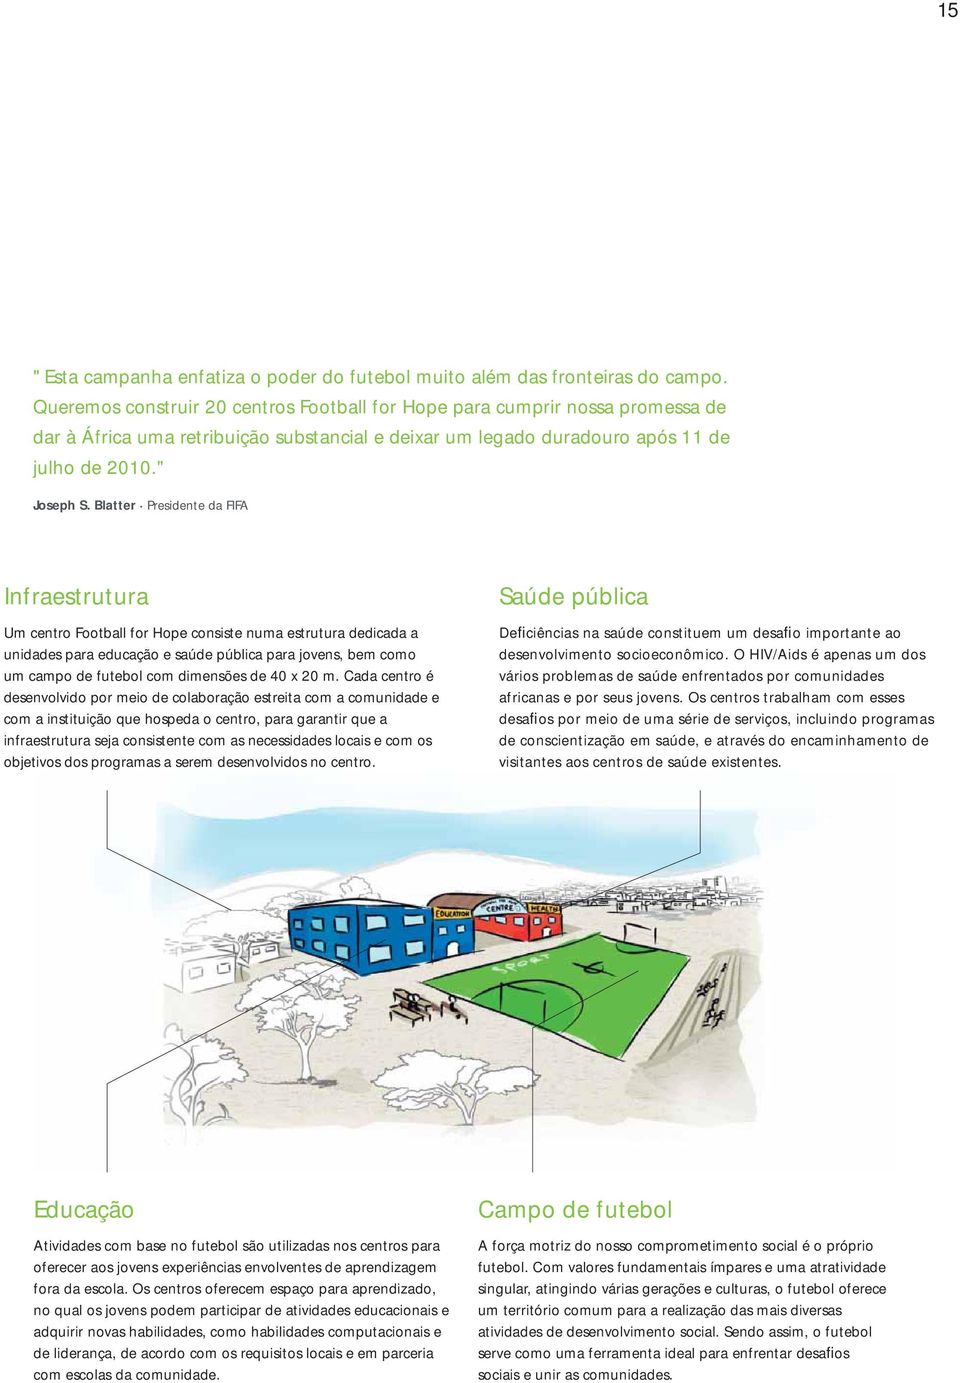 Blatter Presidente da FIFA Infraestrutura Um centro Football for Hope consiste numa estrutura dedicada a unidades para educação e saúde pública para jovens, bem como um campo de futebol com dimensões